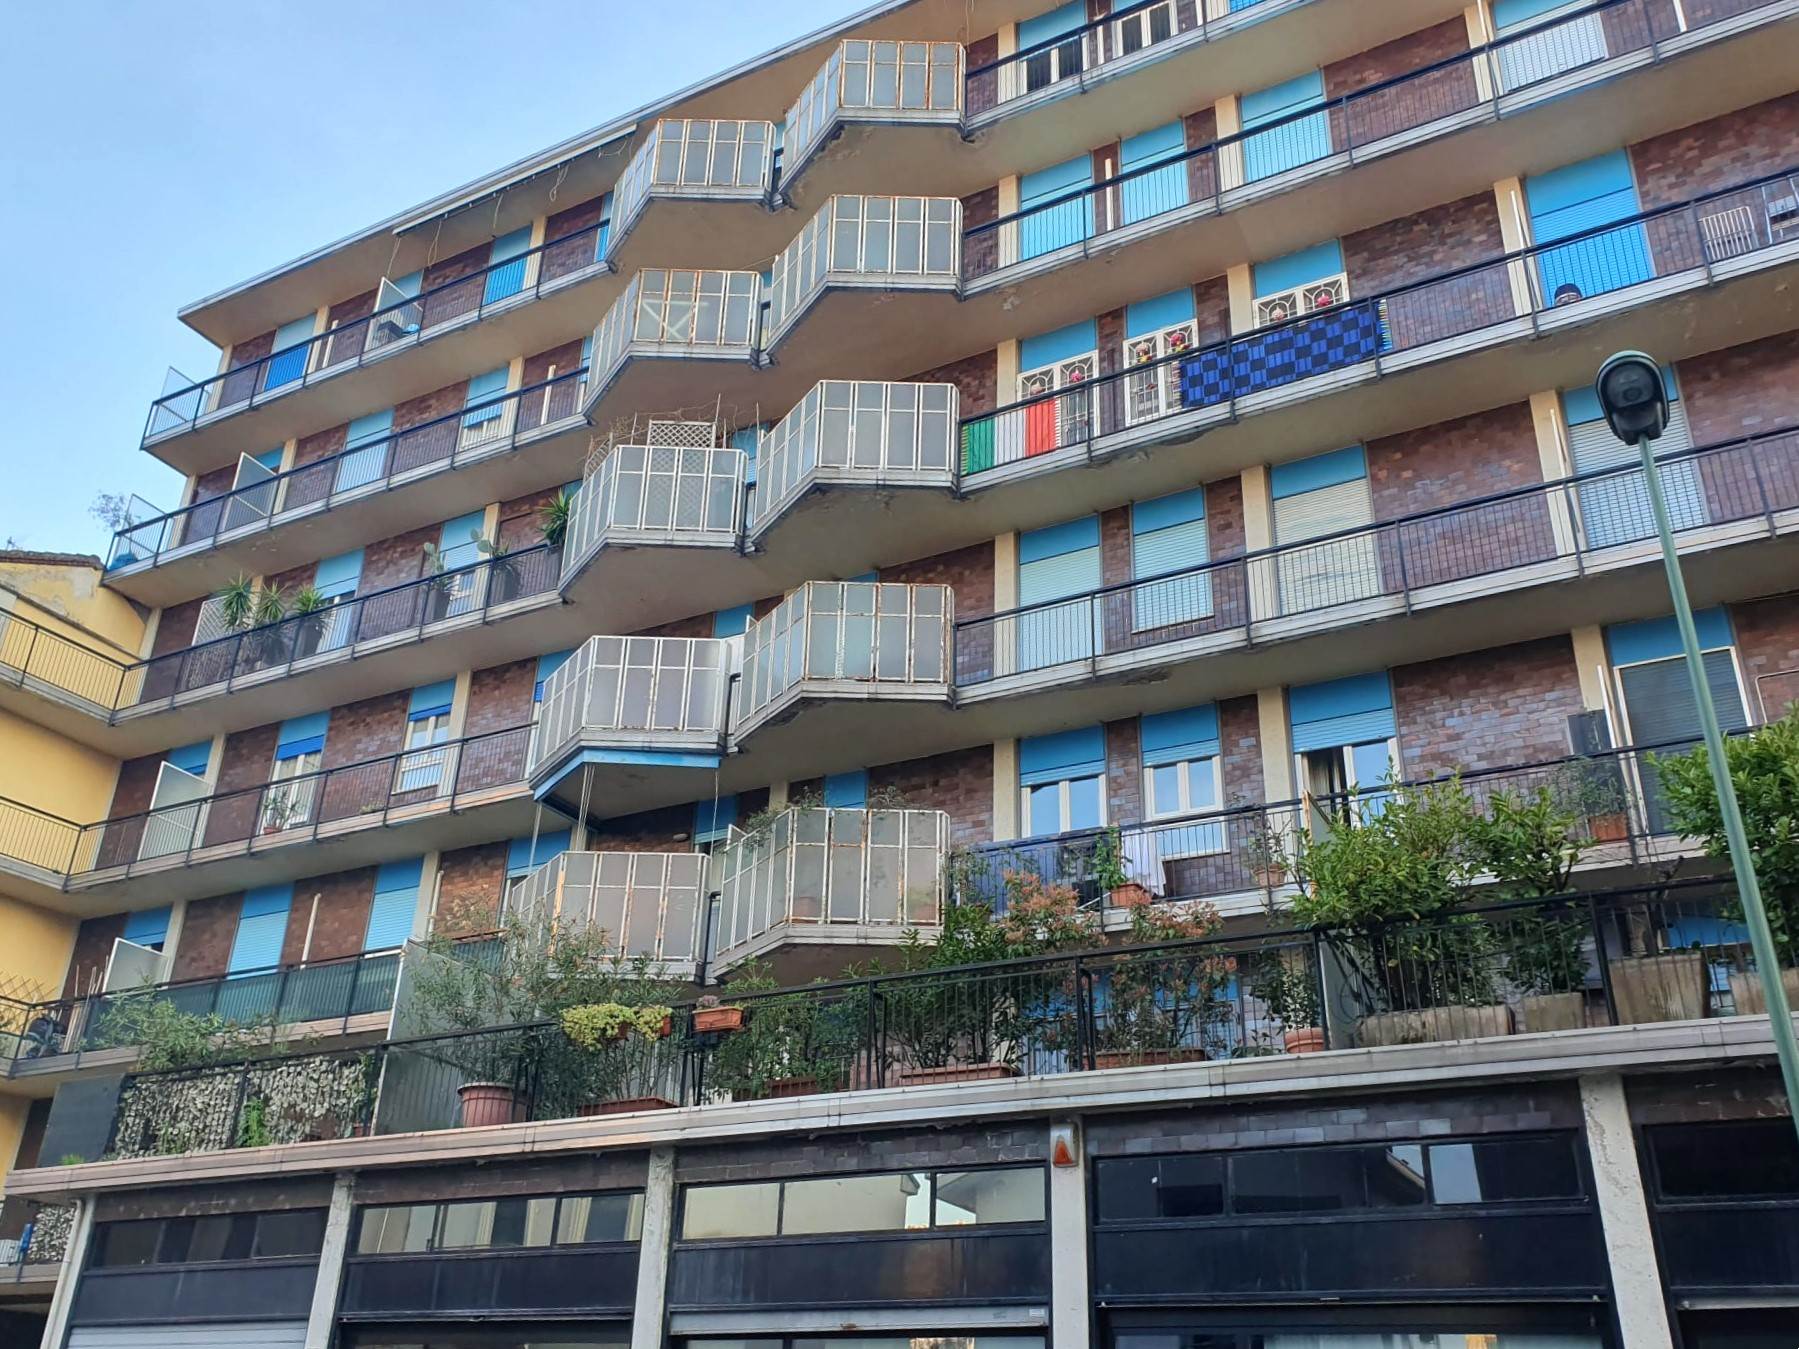 Rif 2/584 L'Abbruzzi Gruppo Immobiliare propone in Sesto San Giovanni zona Marelli via Gorizia, a pochi passi dalla fermata della metropolitana, 